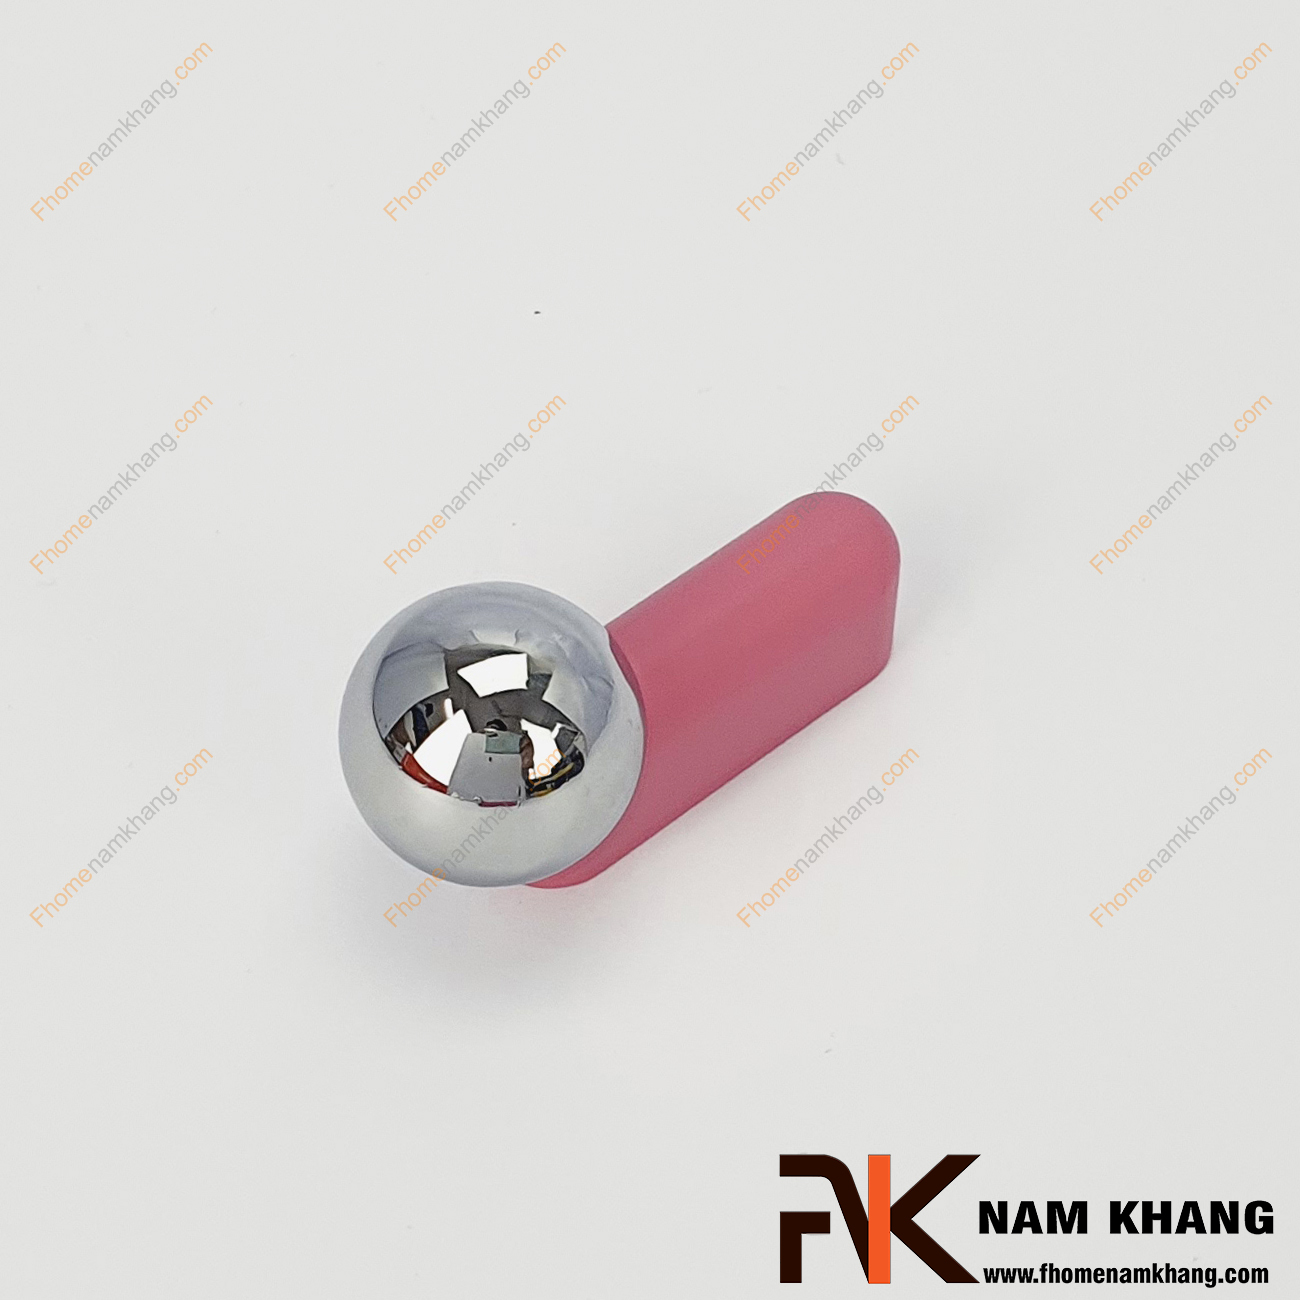 Tay nắm tủ dạng thanh tròn màu hồng phối hợp NK393-HB - sản phẩm tay nắm tủ dạng lắp ghép từ 2 phần thanh tròn và viên bi cầu độc đáo.